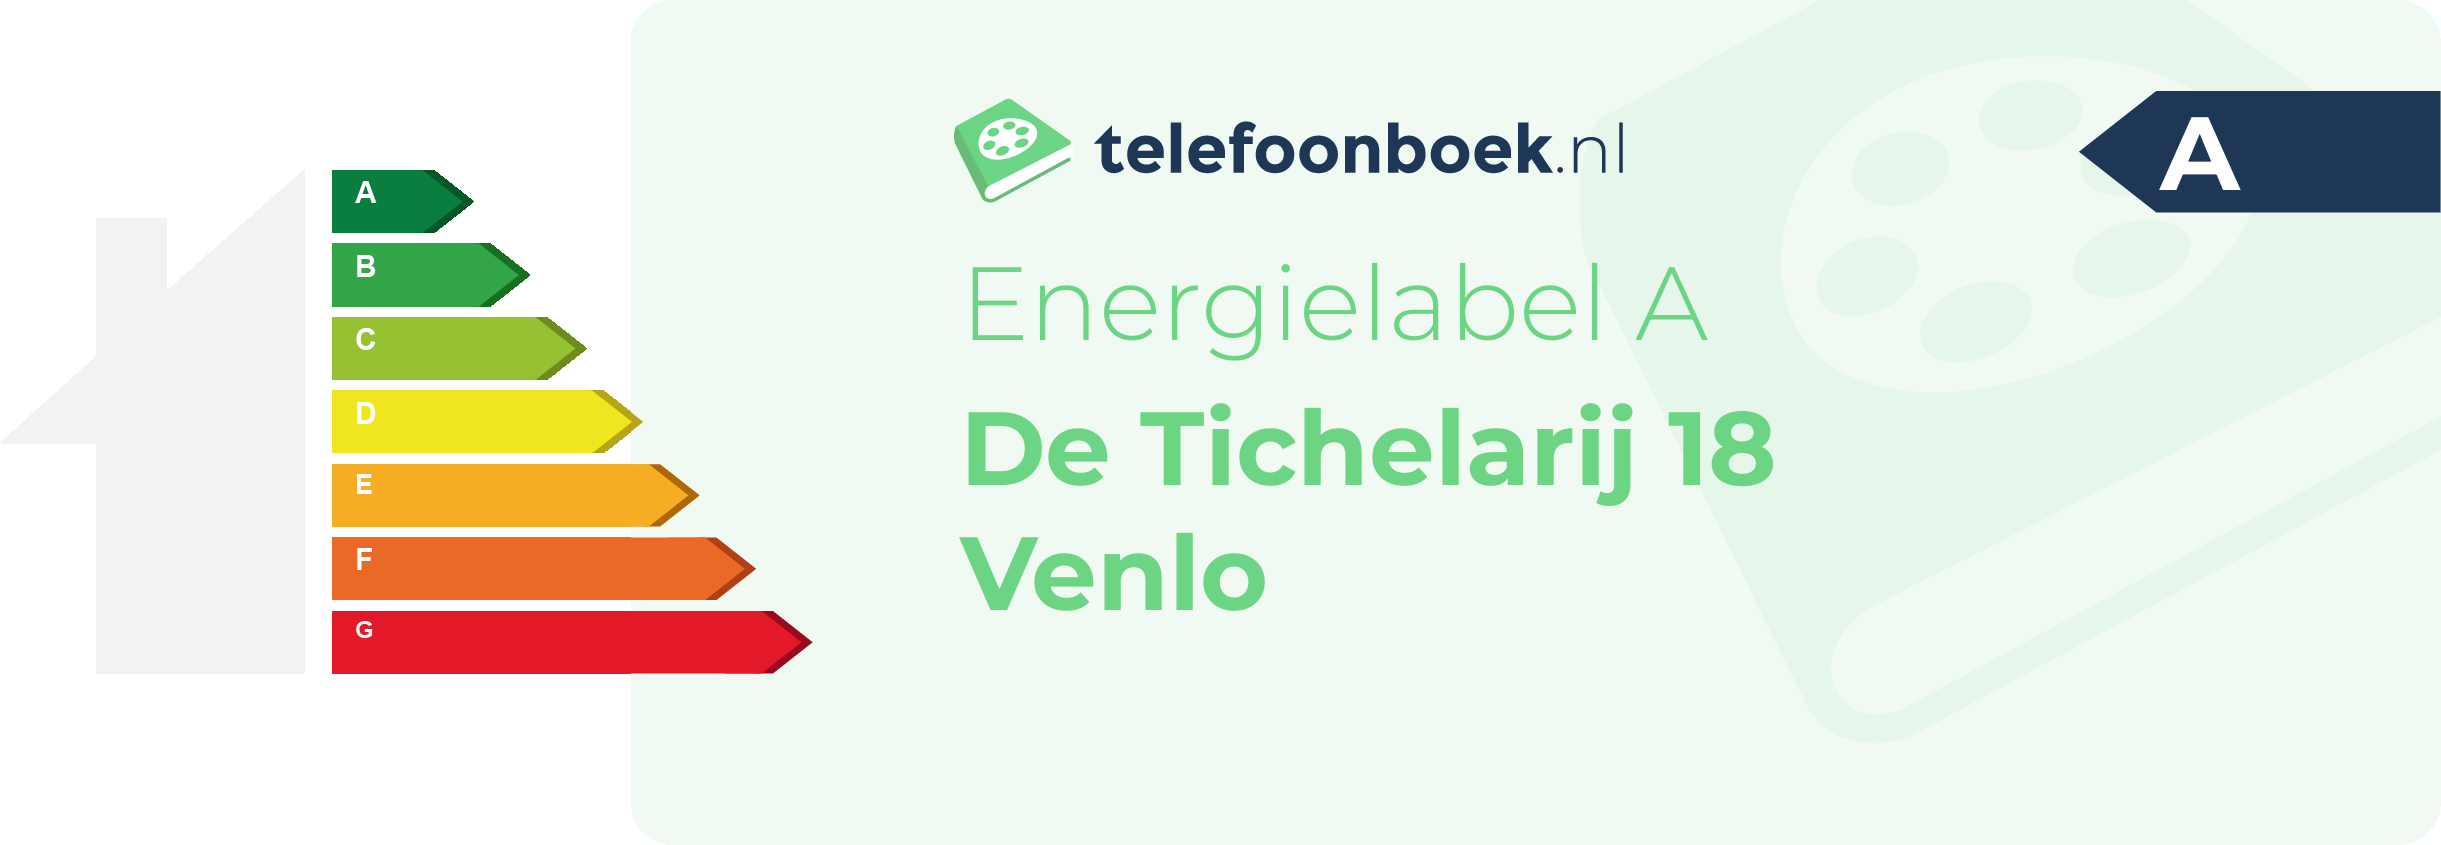 Energielabel De Tichelarij 18 Venlo